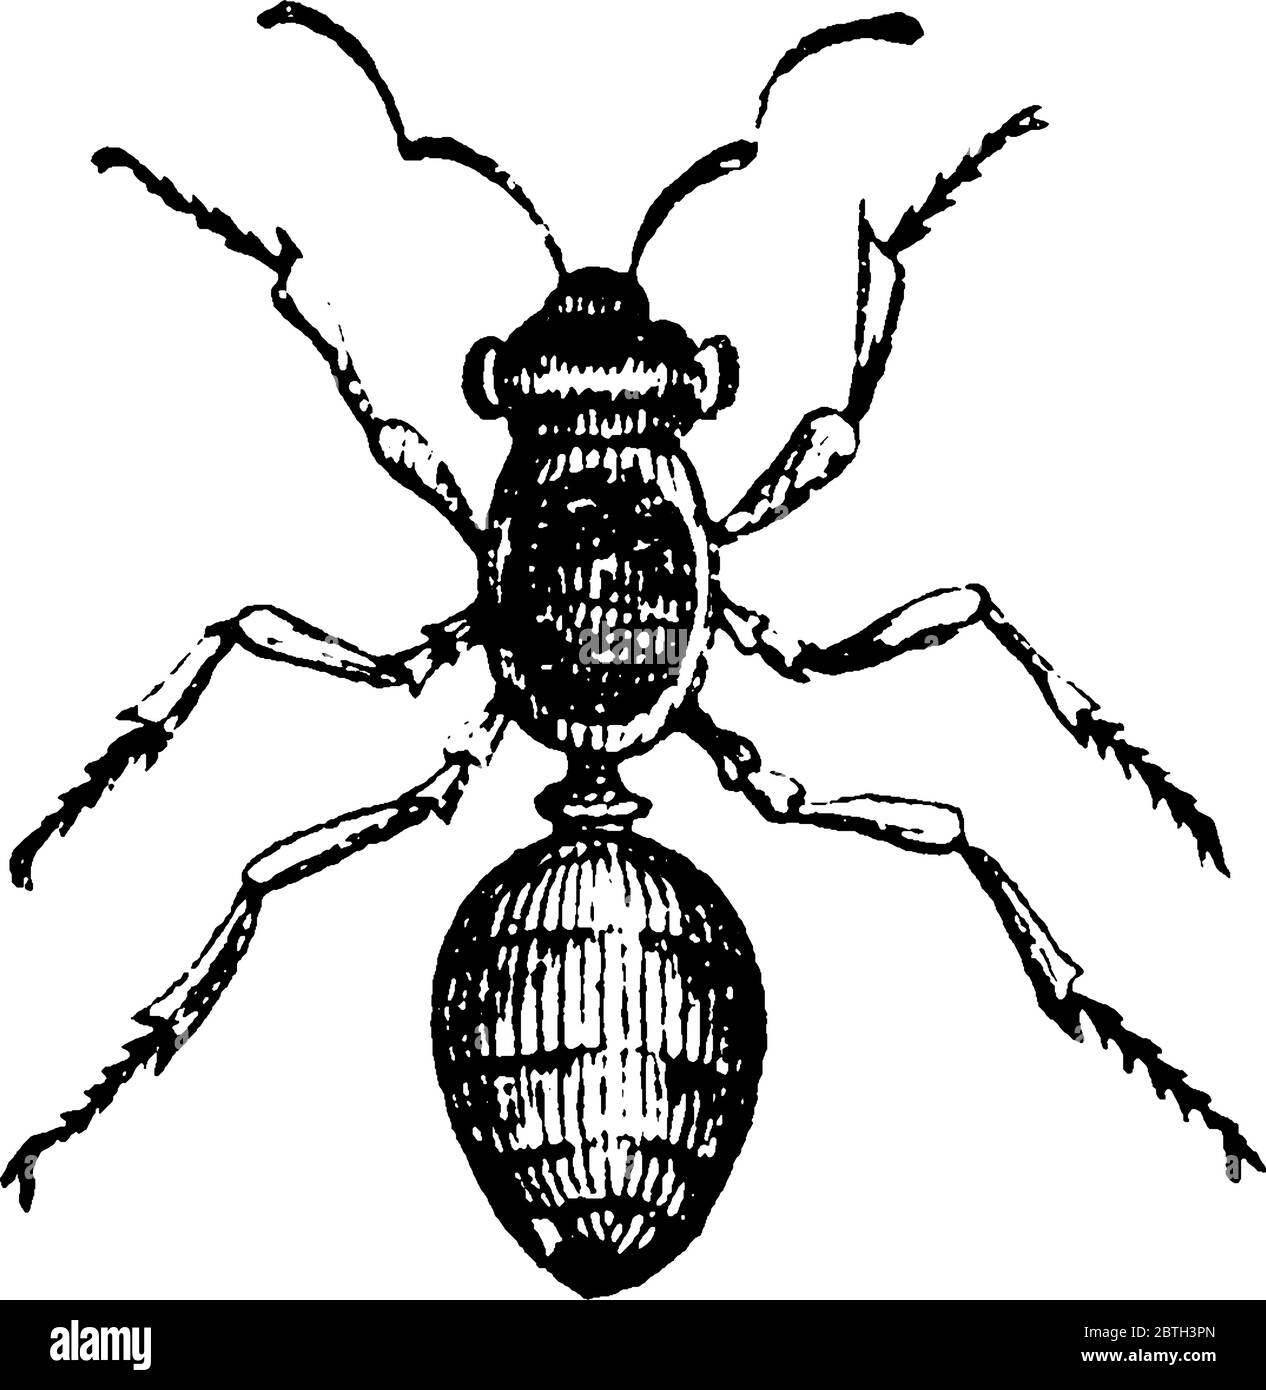 Les fourmis sont des insectes de la famille des Formicidae, dessin de ligne vintage ou illustration de gravure. Illustration de Vecteur